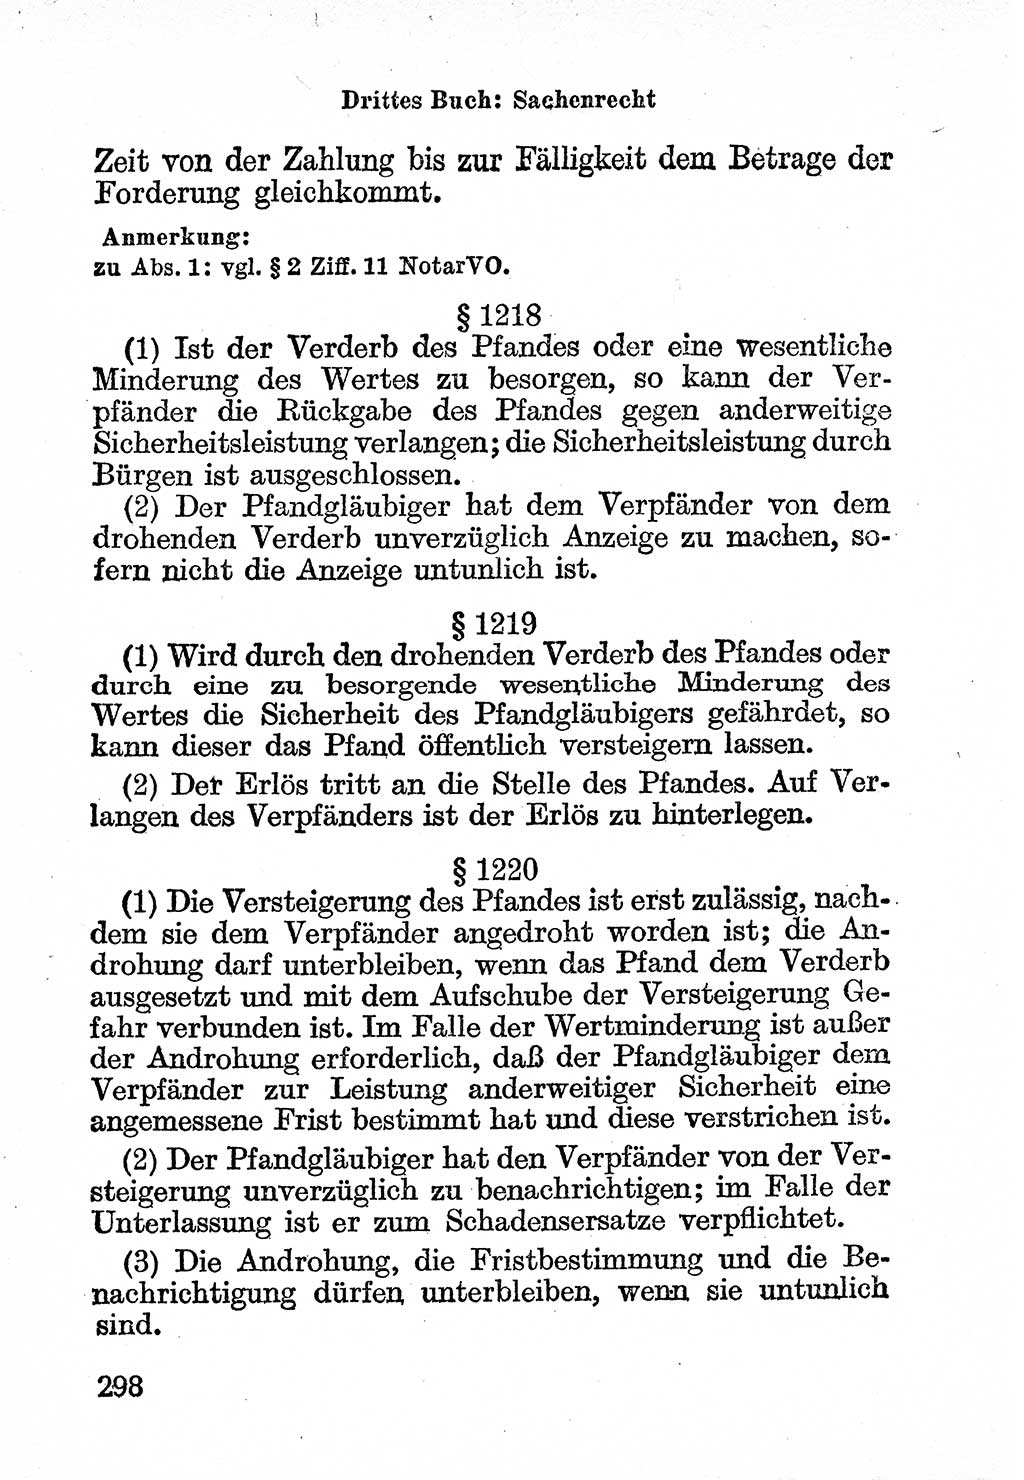 Bürgerliches Gesetzbuch (BGB) nebst wichtigen Nebengesetzen [Deutsche Demokratische Republik (DDR)] 1956, Seite 298 (BGB Nebenges. DDR 1956, S. 298)